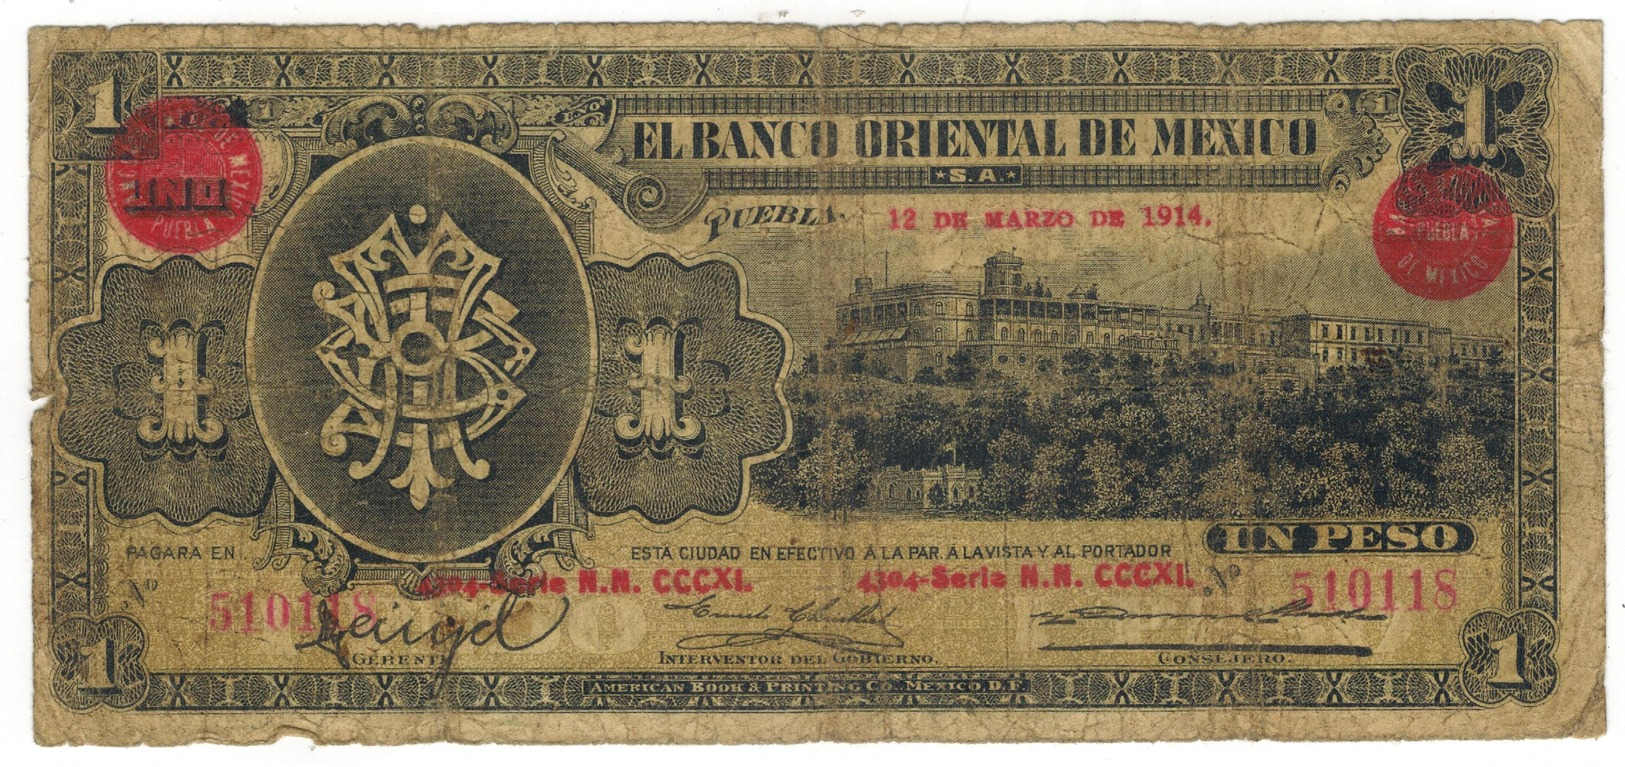 Mexico, 1 Peso , EL BANCO ORIENTAL DE MEXICO, 1914, Used, See Scan. - Mexico